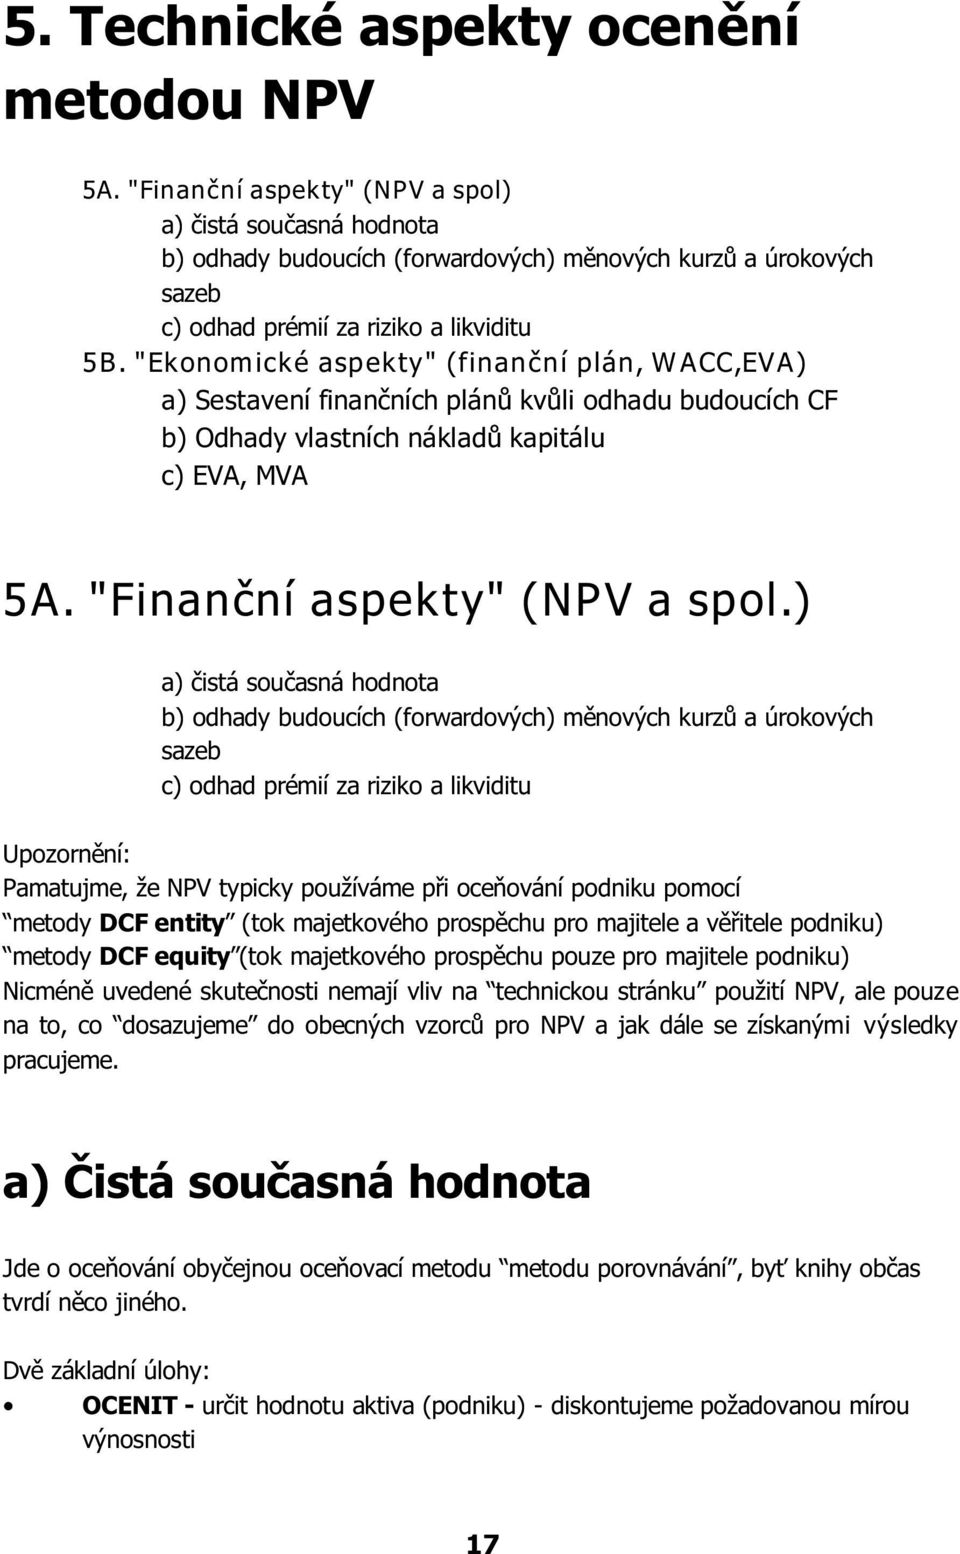 "Ekonomické aspekty" (finanèní plán, W ACC,EVA) a) Sestavení finanèních plánù kvùli odhadu budoucích CF b) Odhady vlastních nákladù kapitálu c) EVA, MVA 5A. "Finanèní aspekty" (NPV a spol.